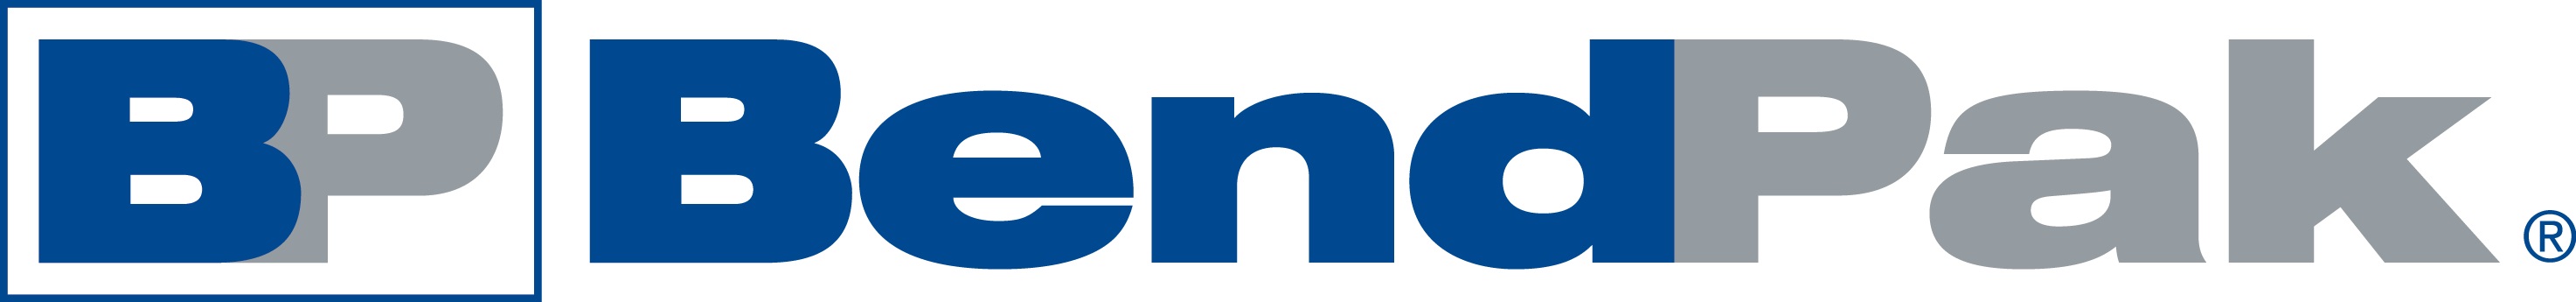 new-bendpak-logo-2016.jpg